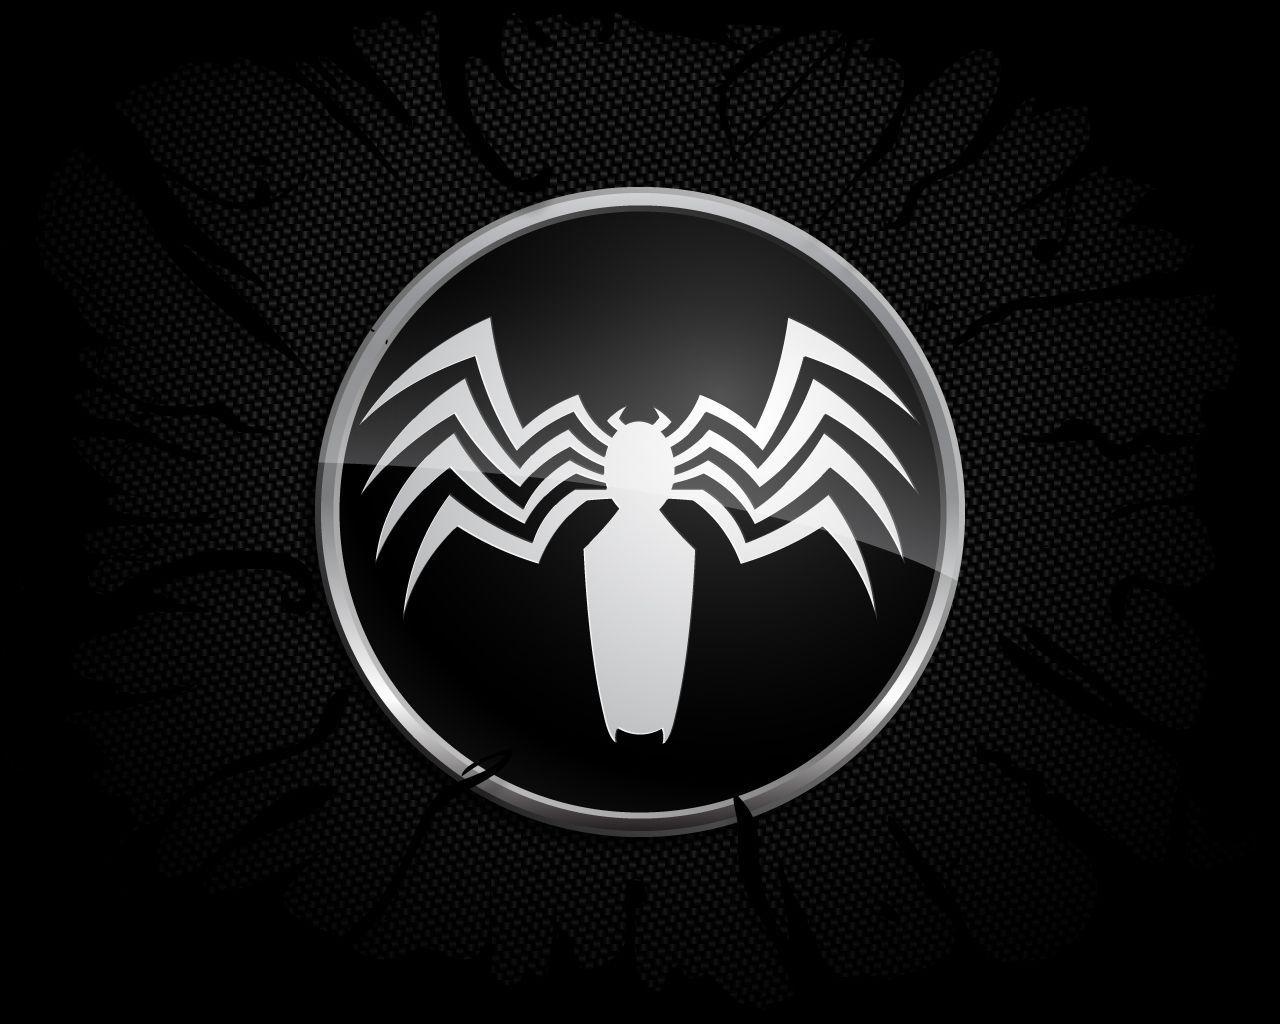 Venom #Fan #Art #Wallpaper #Logo. By: SpazChicken. Marvel Comics